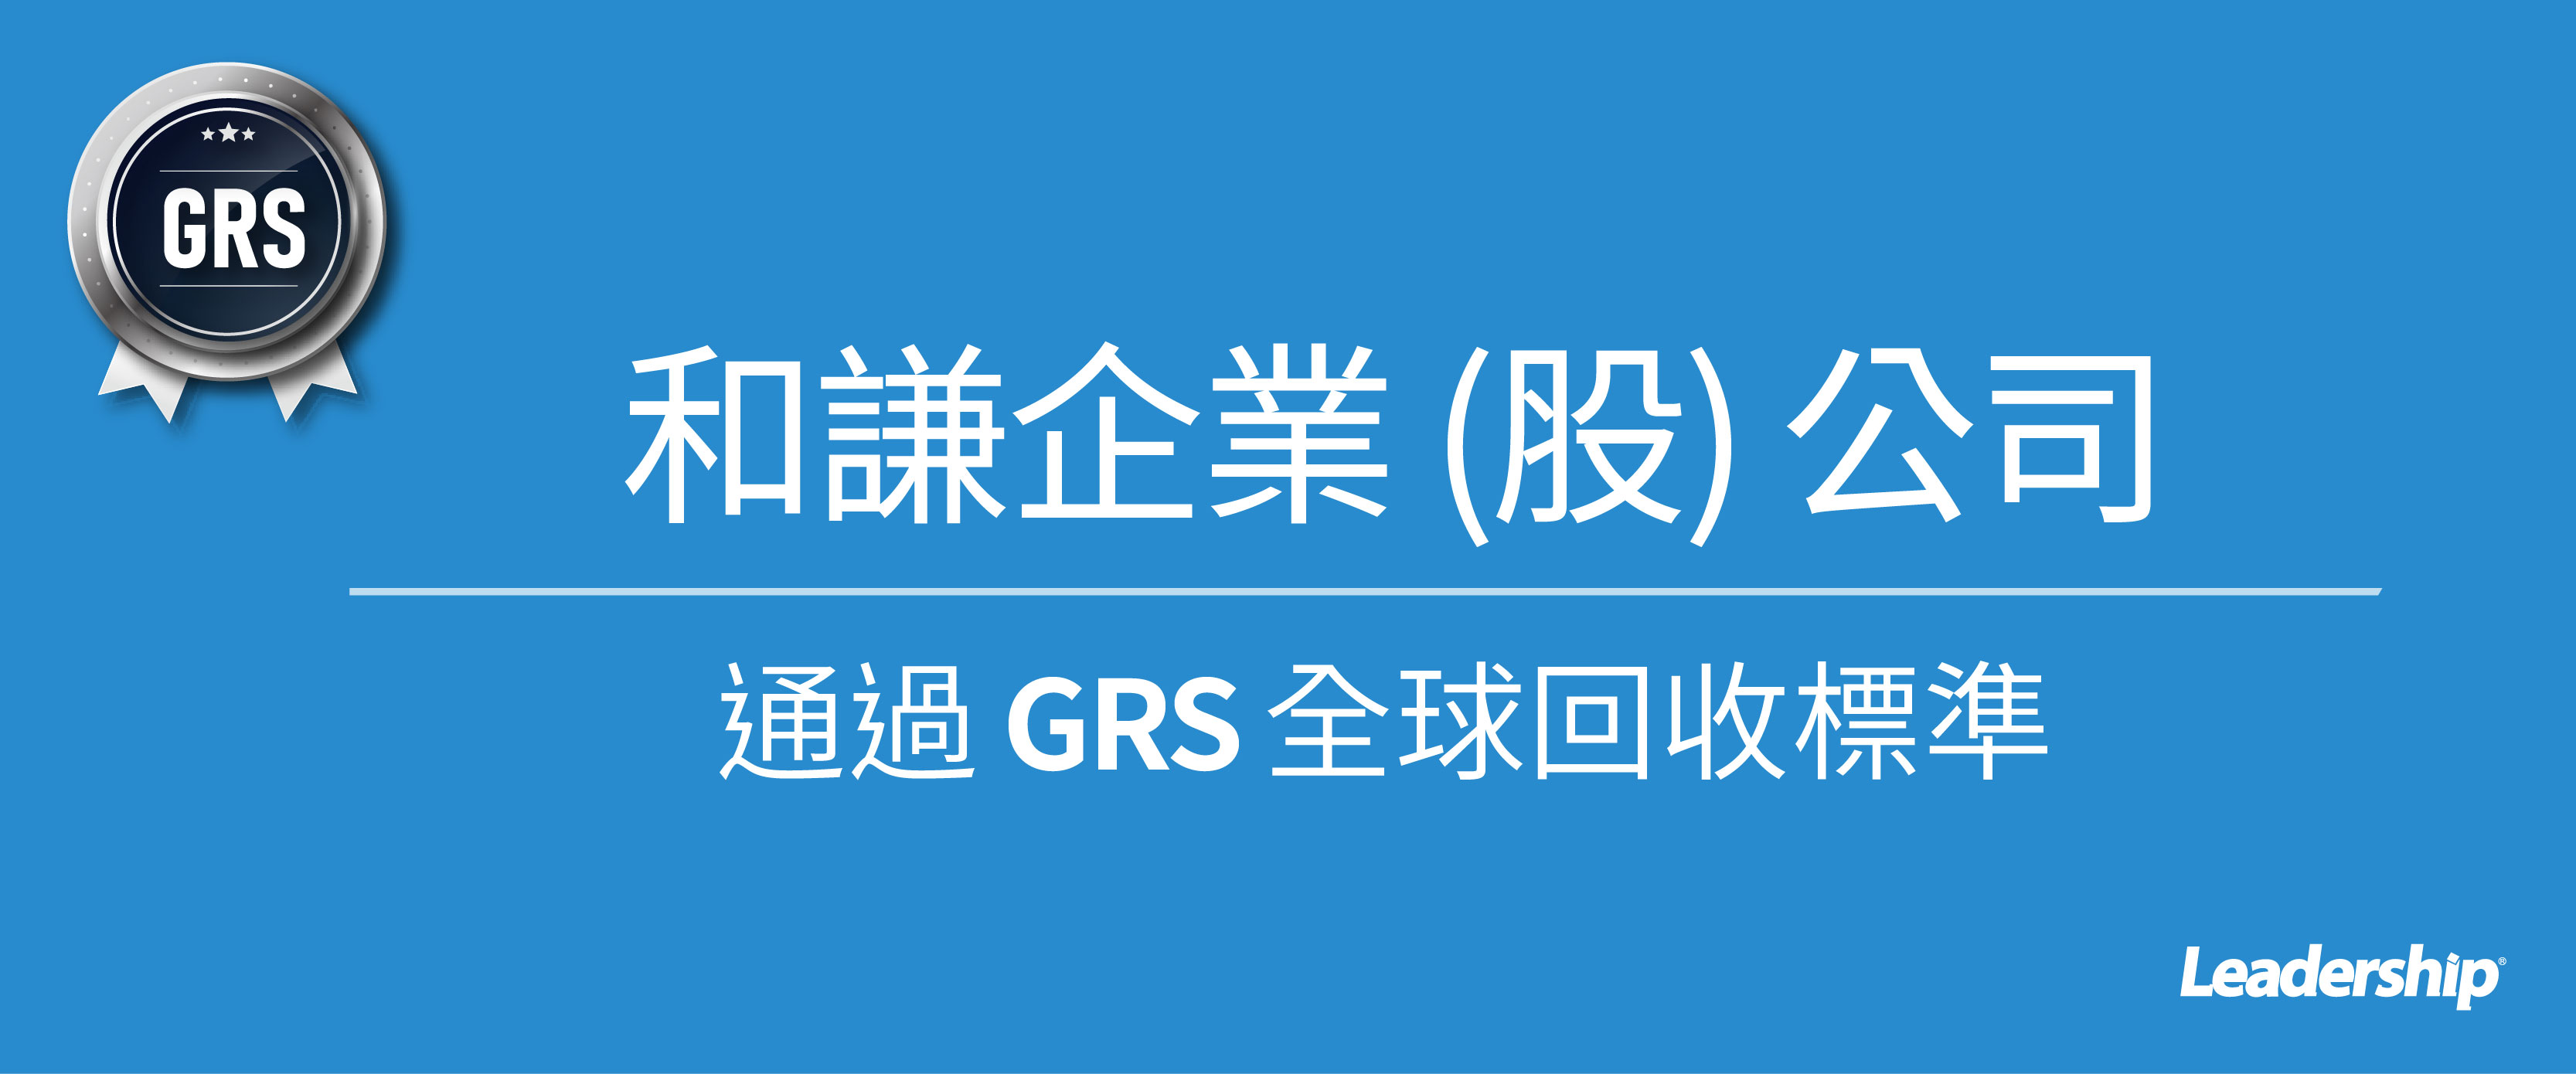 和謙企業 (股) 公司通過 GRS 全球回收標準認證